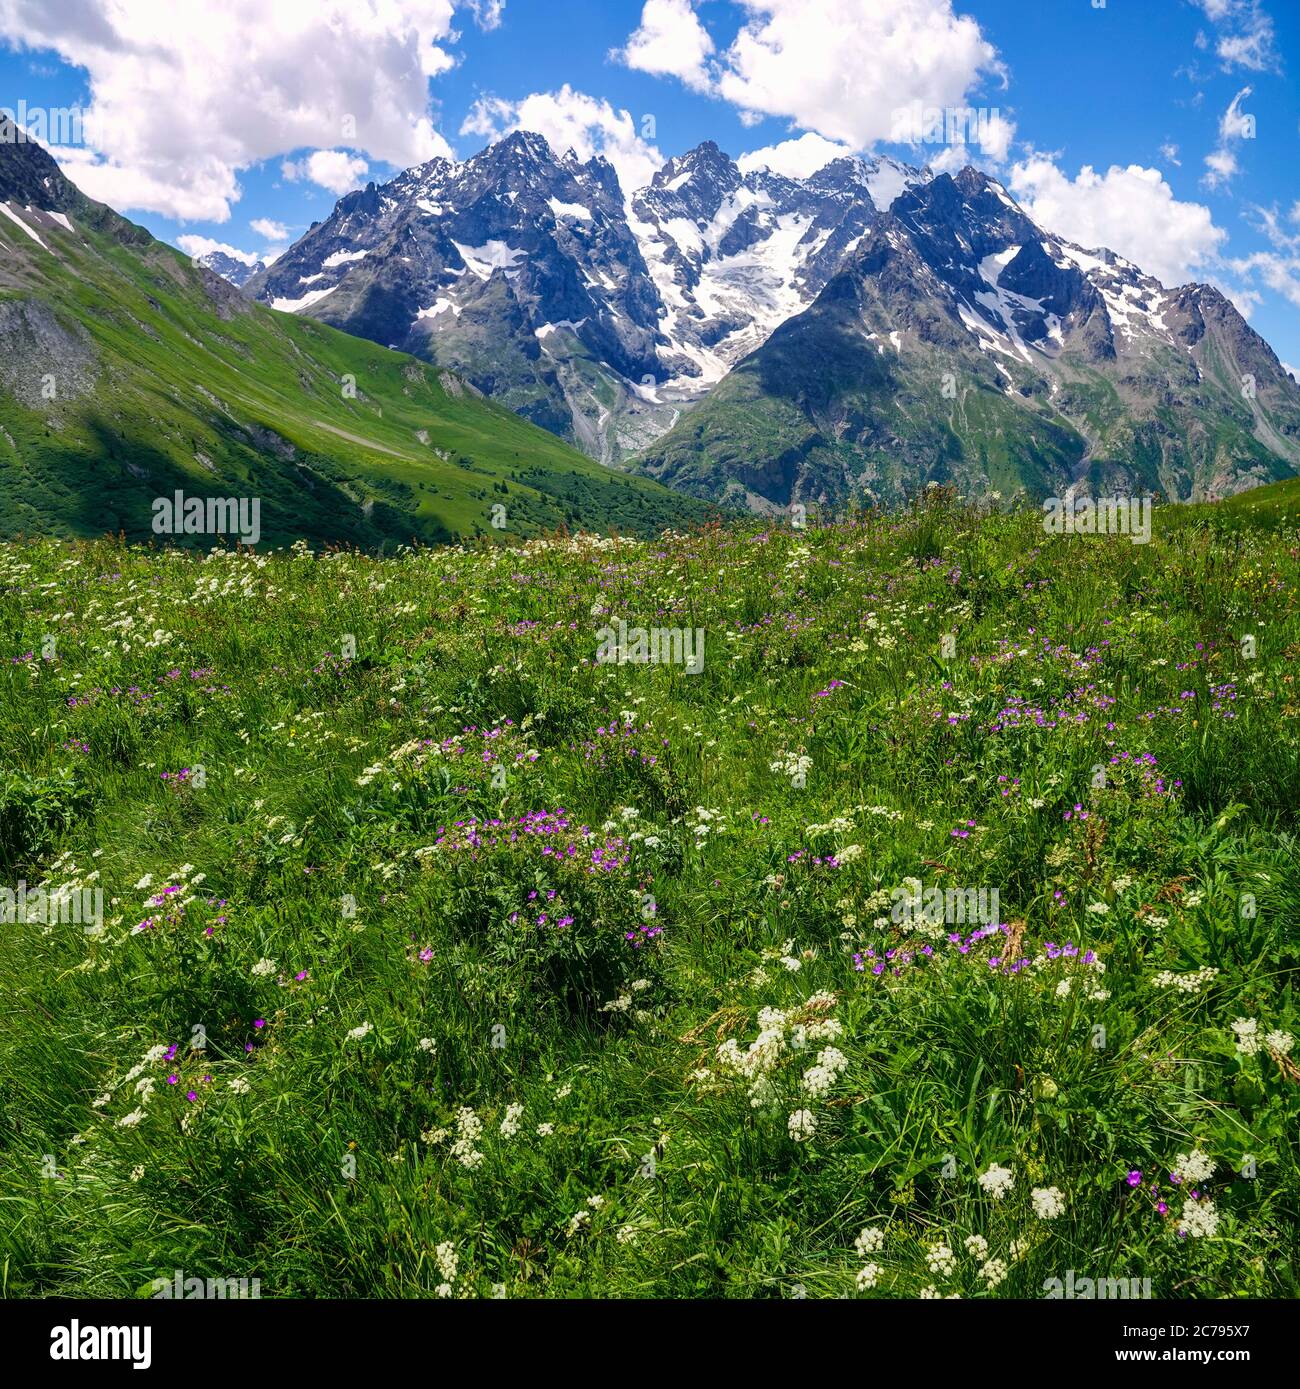 Prairies verdoyantes, fleurs alpines et pics alpins, Parc national des Ecrins, Alpes françaises, France Banque D'Images